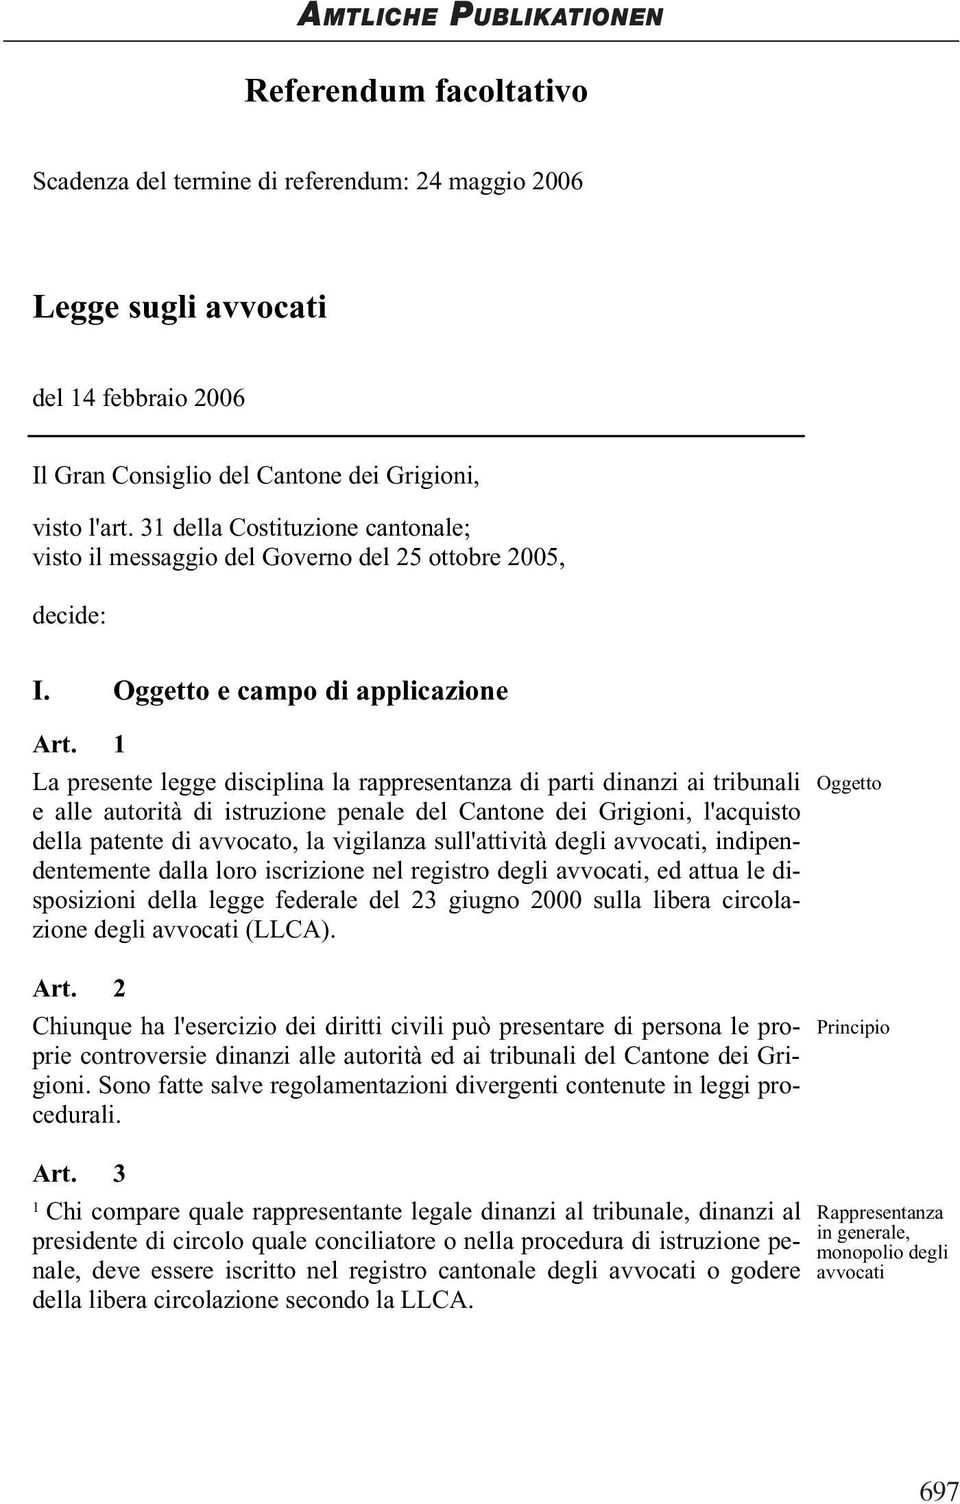 La presente legge disciplina la rappresentanza di parti dinanzi ai tribunali Oggetto e alle autorità di istruzione penale del Cantone dei Grigioni, l'acquisto della patente di avvocato, la vigilanza